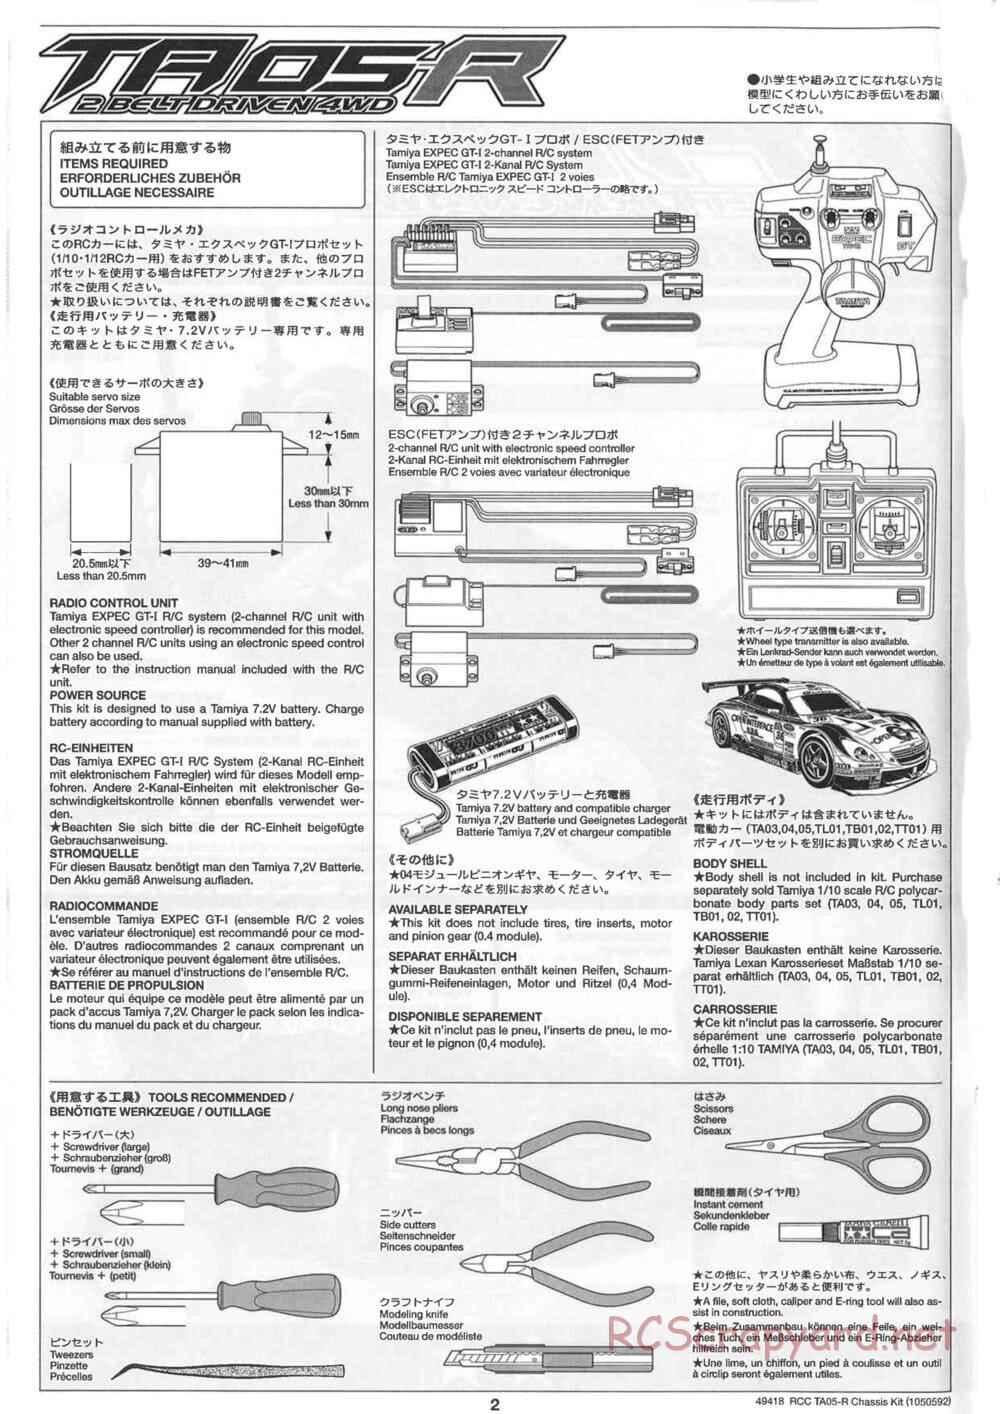 Tamiya - TA05-R Chassis - Manual - Page 2